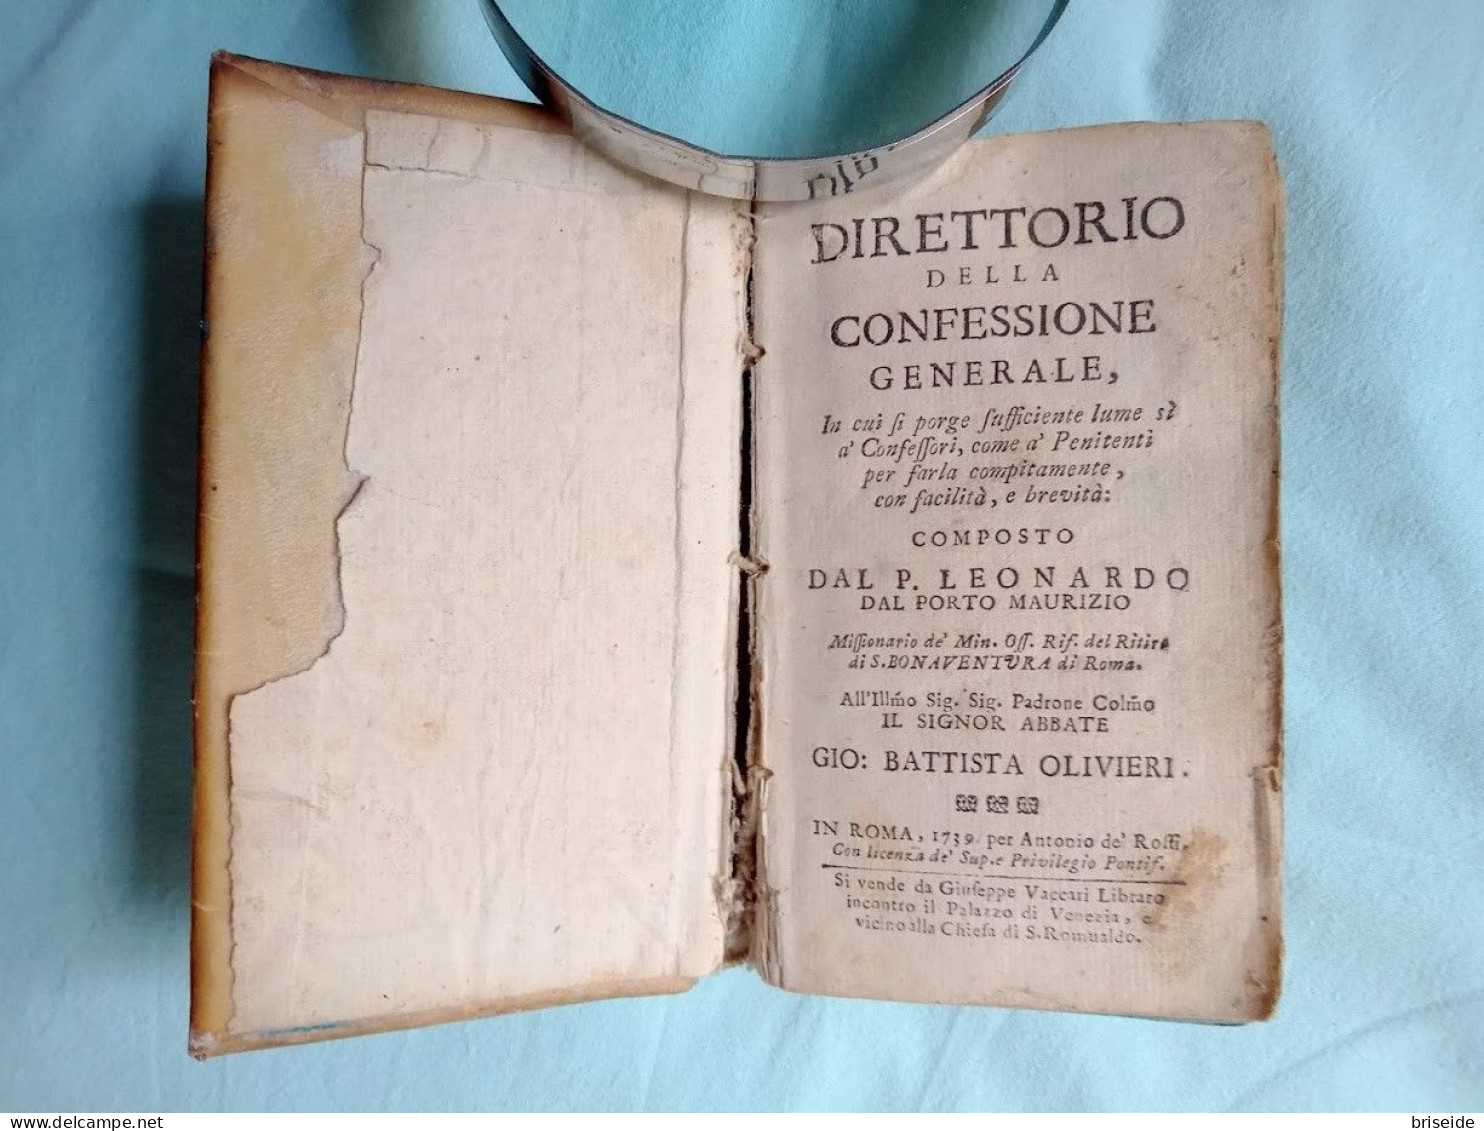 1739 DIRETTORIO DELLA CONFESSIONE GENERALE DI P. LEONARDO PORTO MAURIZIO "SI VENDE A ROMA DA GIUSEPPE VACCARI LIBRARO"